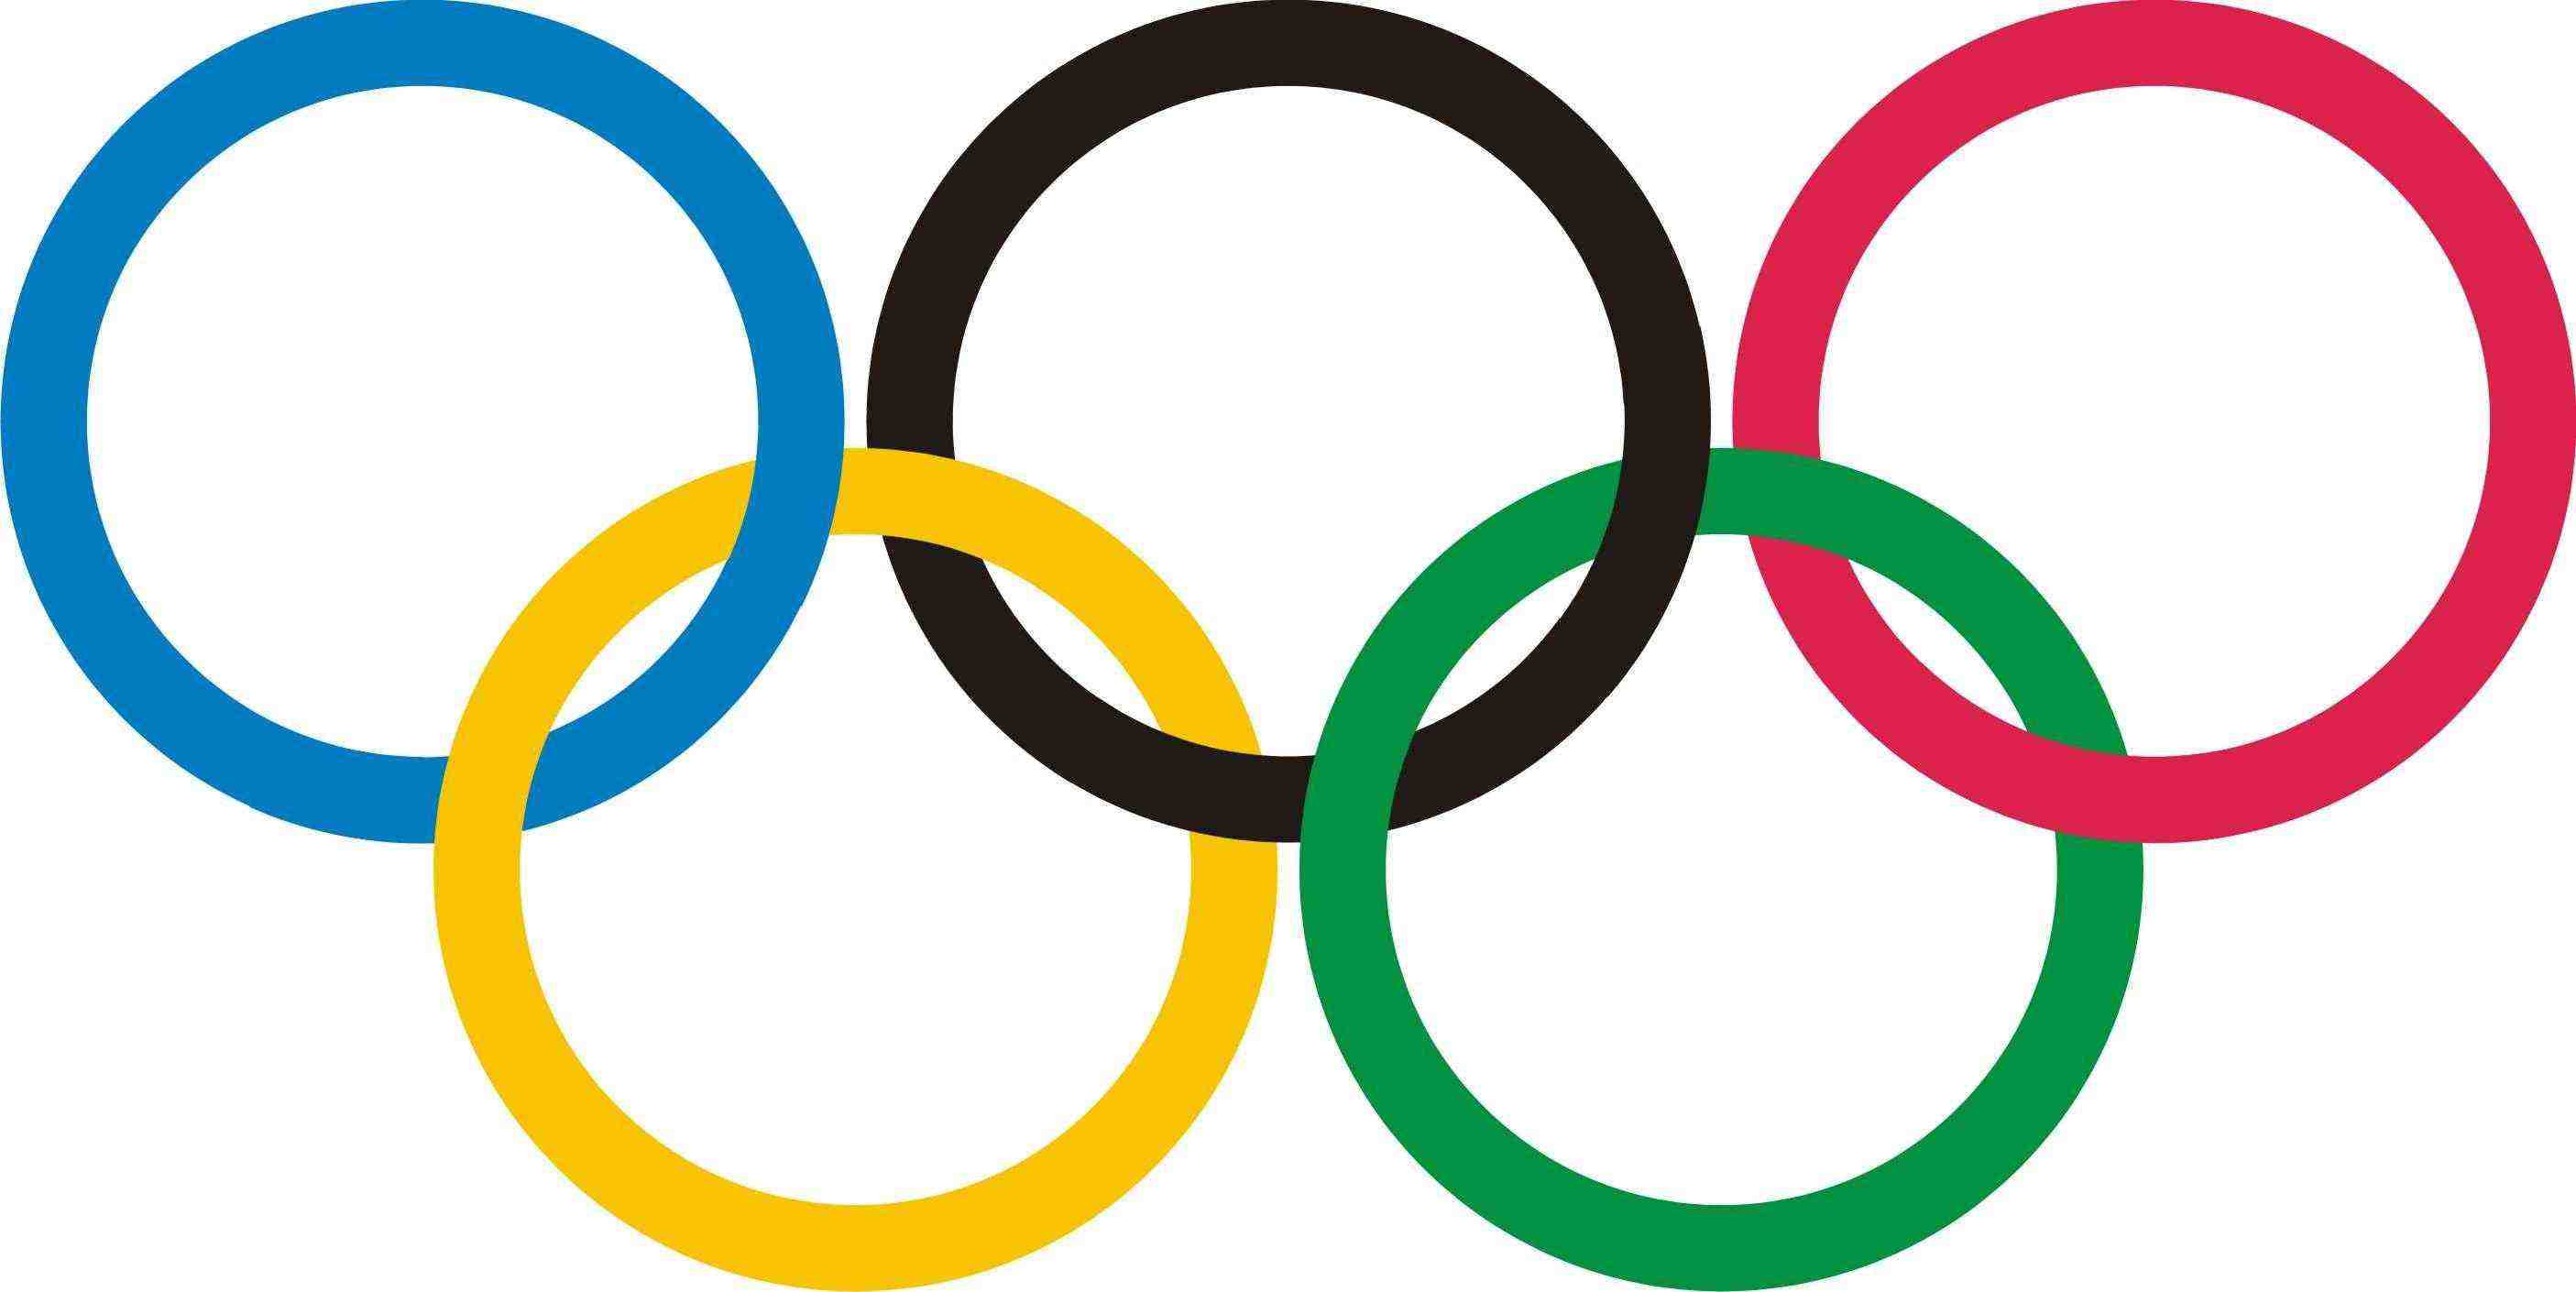 5 олимпийских колец как символ